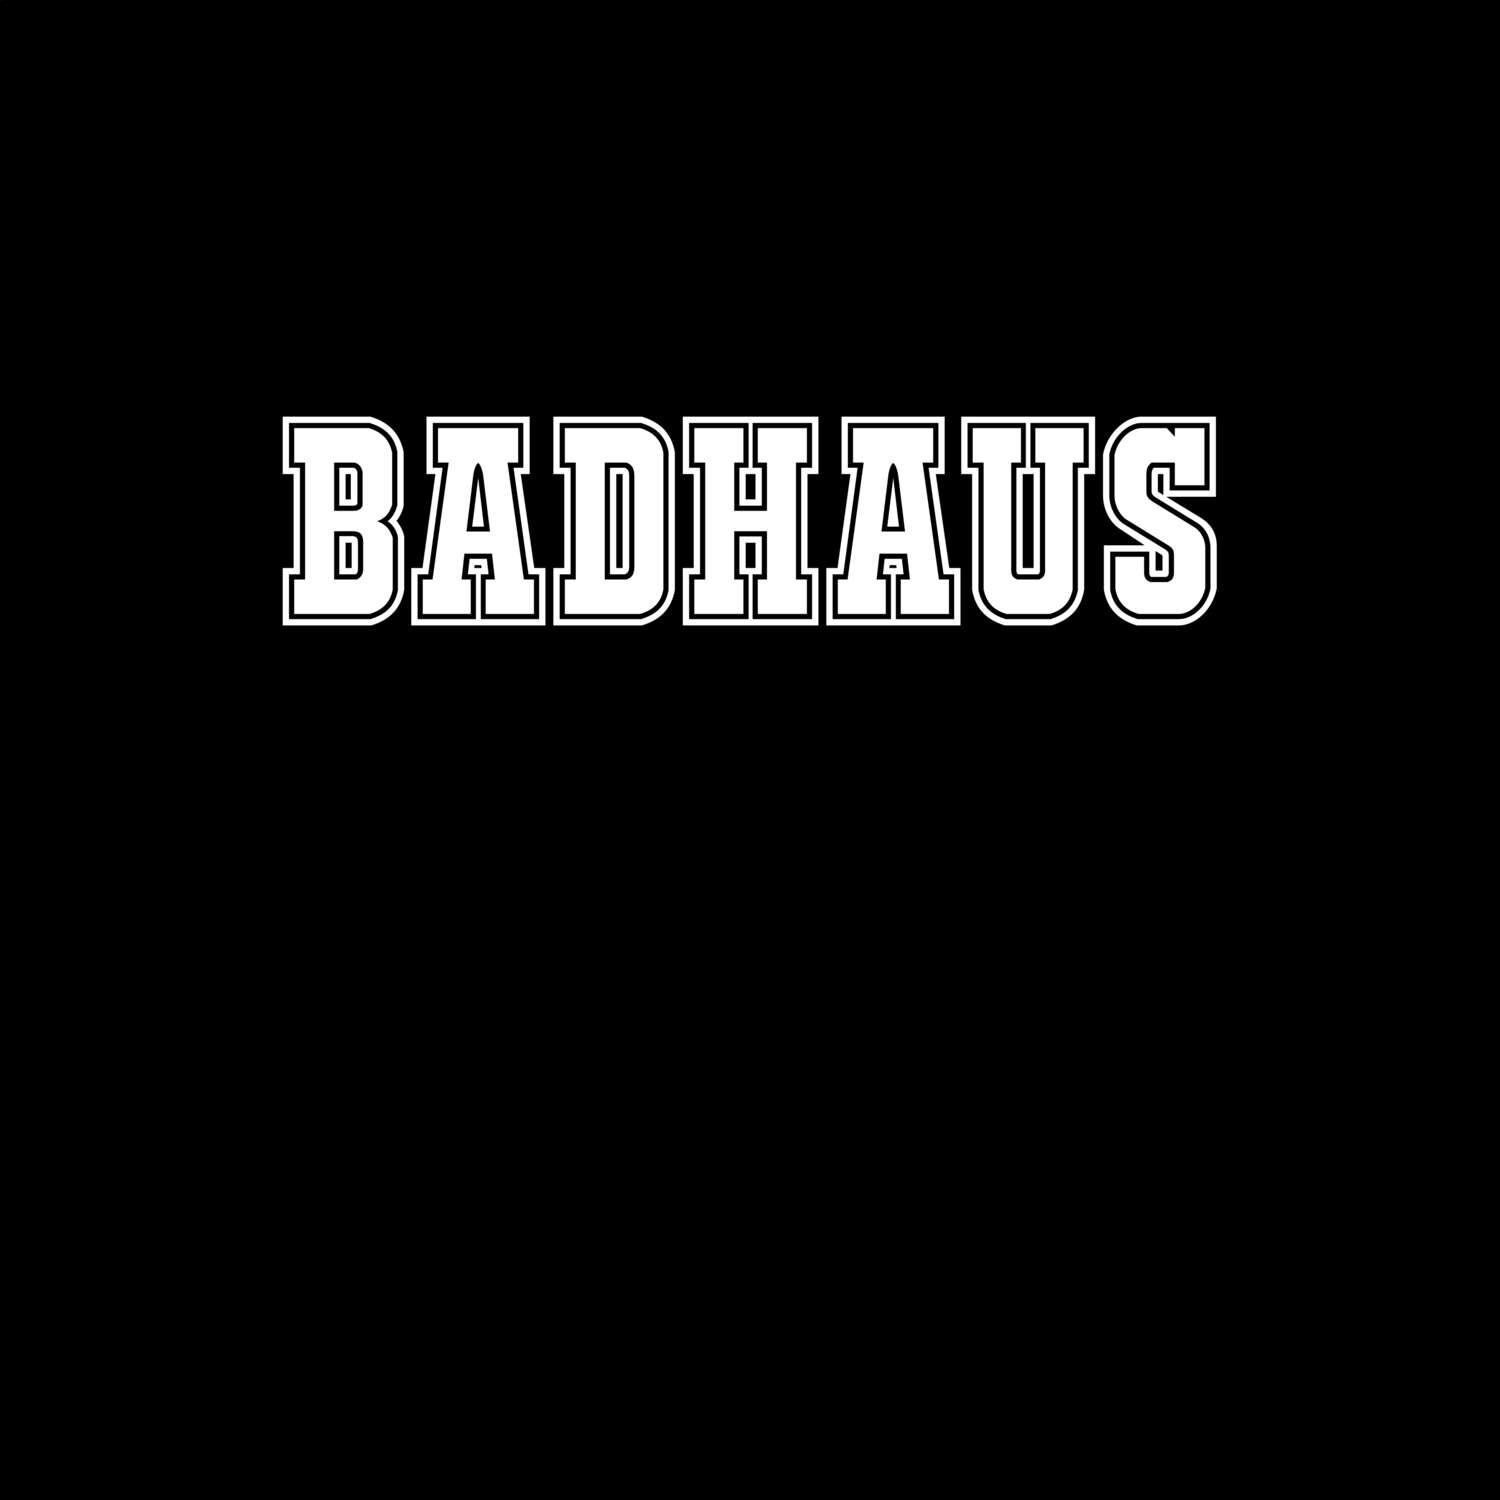 Badhaus T-Shirt »Classic«